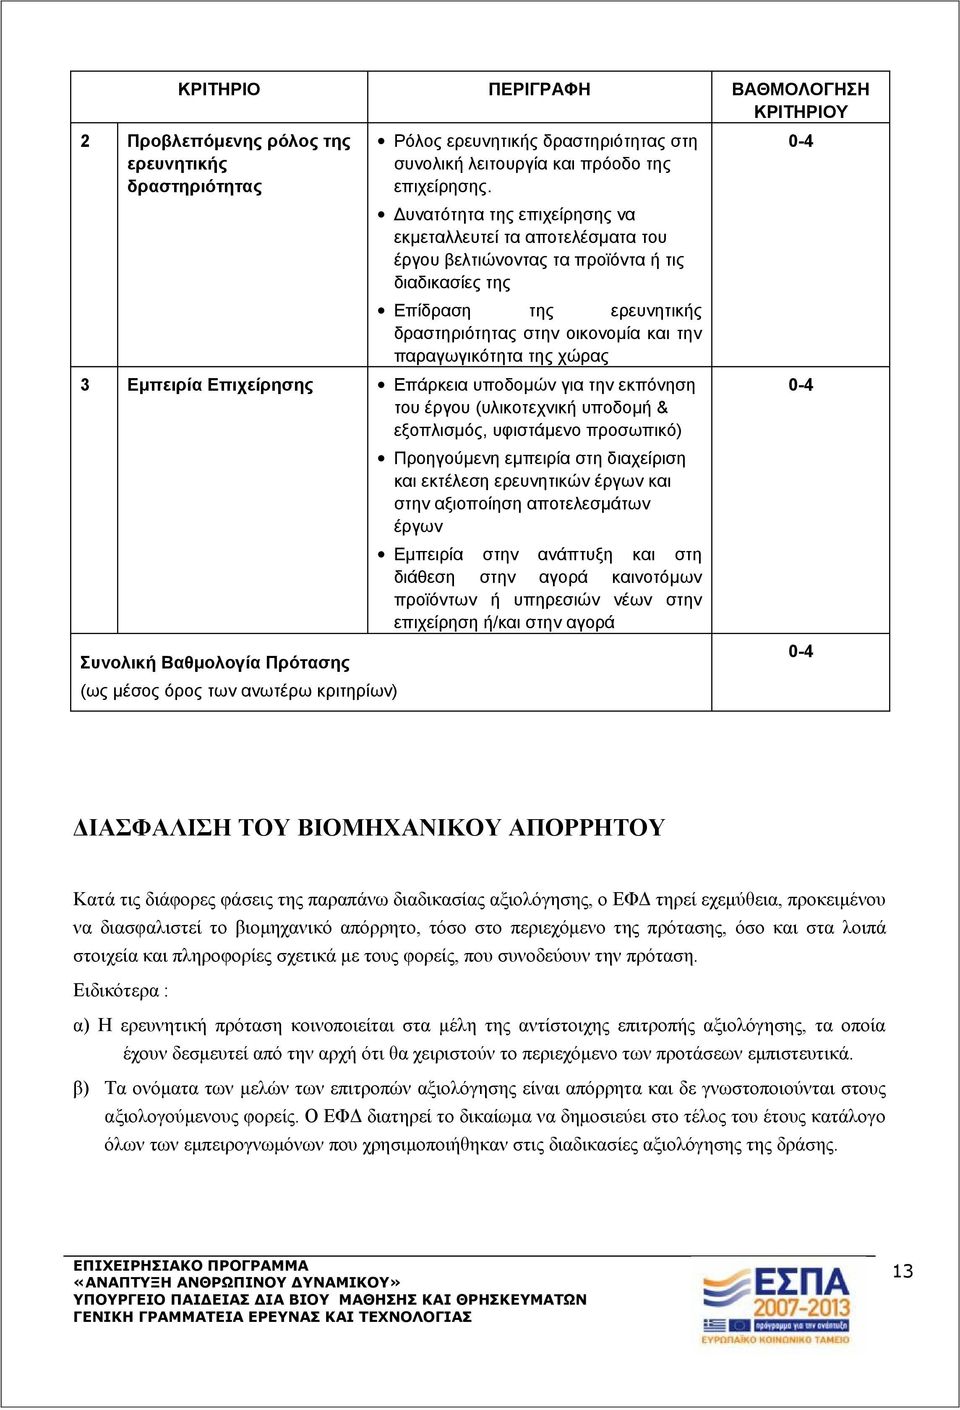 χώρας 3 Εμπειρία Επιχείρησης Επάρκεια υποδομών για την εκπόνηση του έργου (υλικοτεχνική υποδομή & εξοπλισμός, υφιστάμενο προσωπικό) Συνολική Βαθμολογία Πρότασης (ως μέσος όρος των ανωτέρω κριτηρίων)